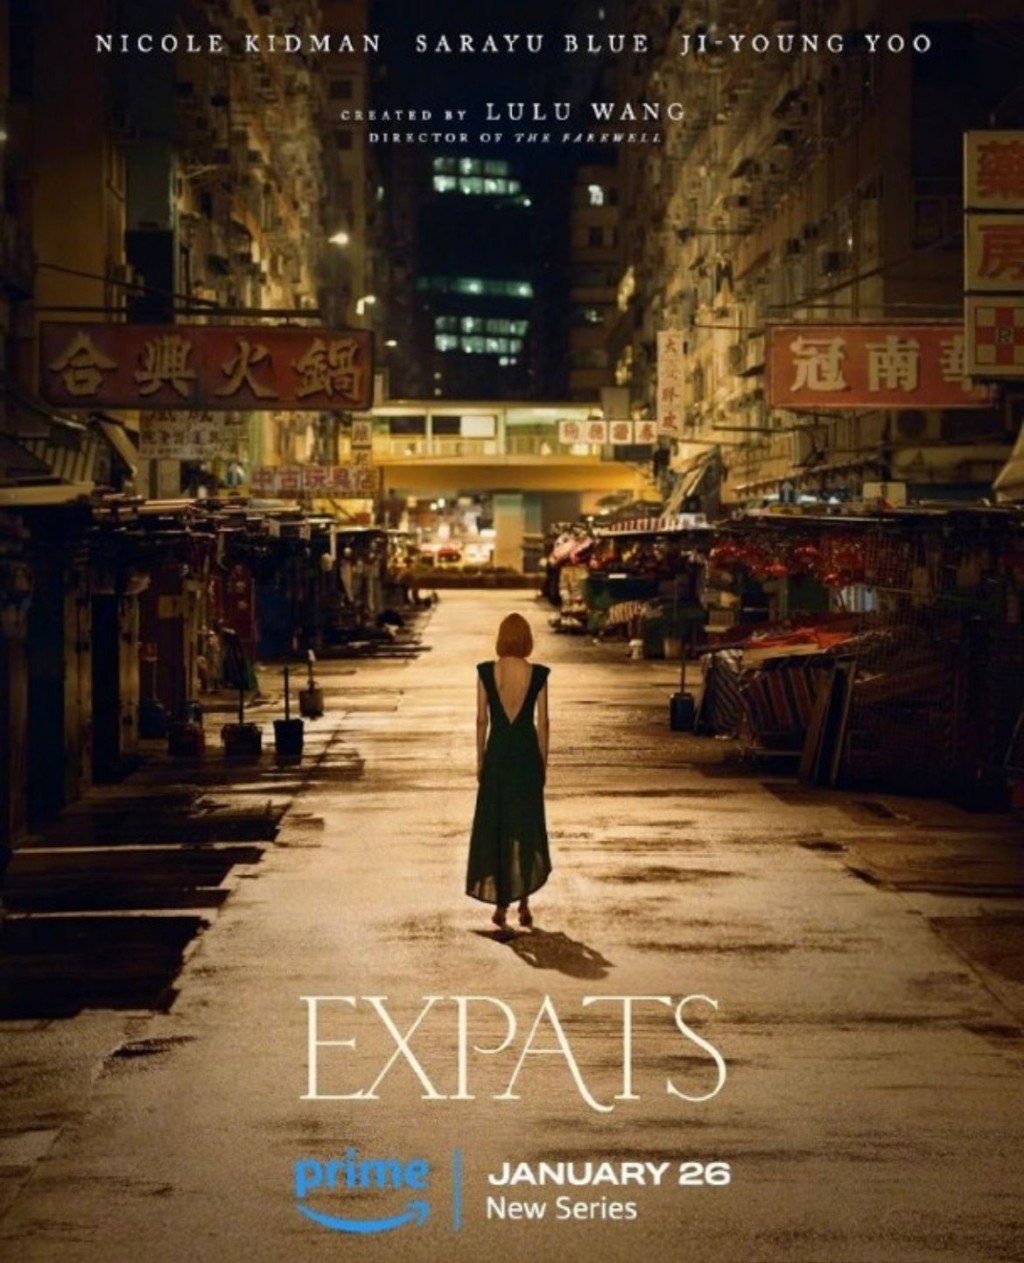 妮歌來港取景新劇《Expats》公開海報及首播日期。